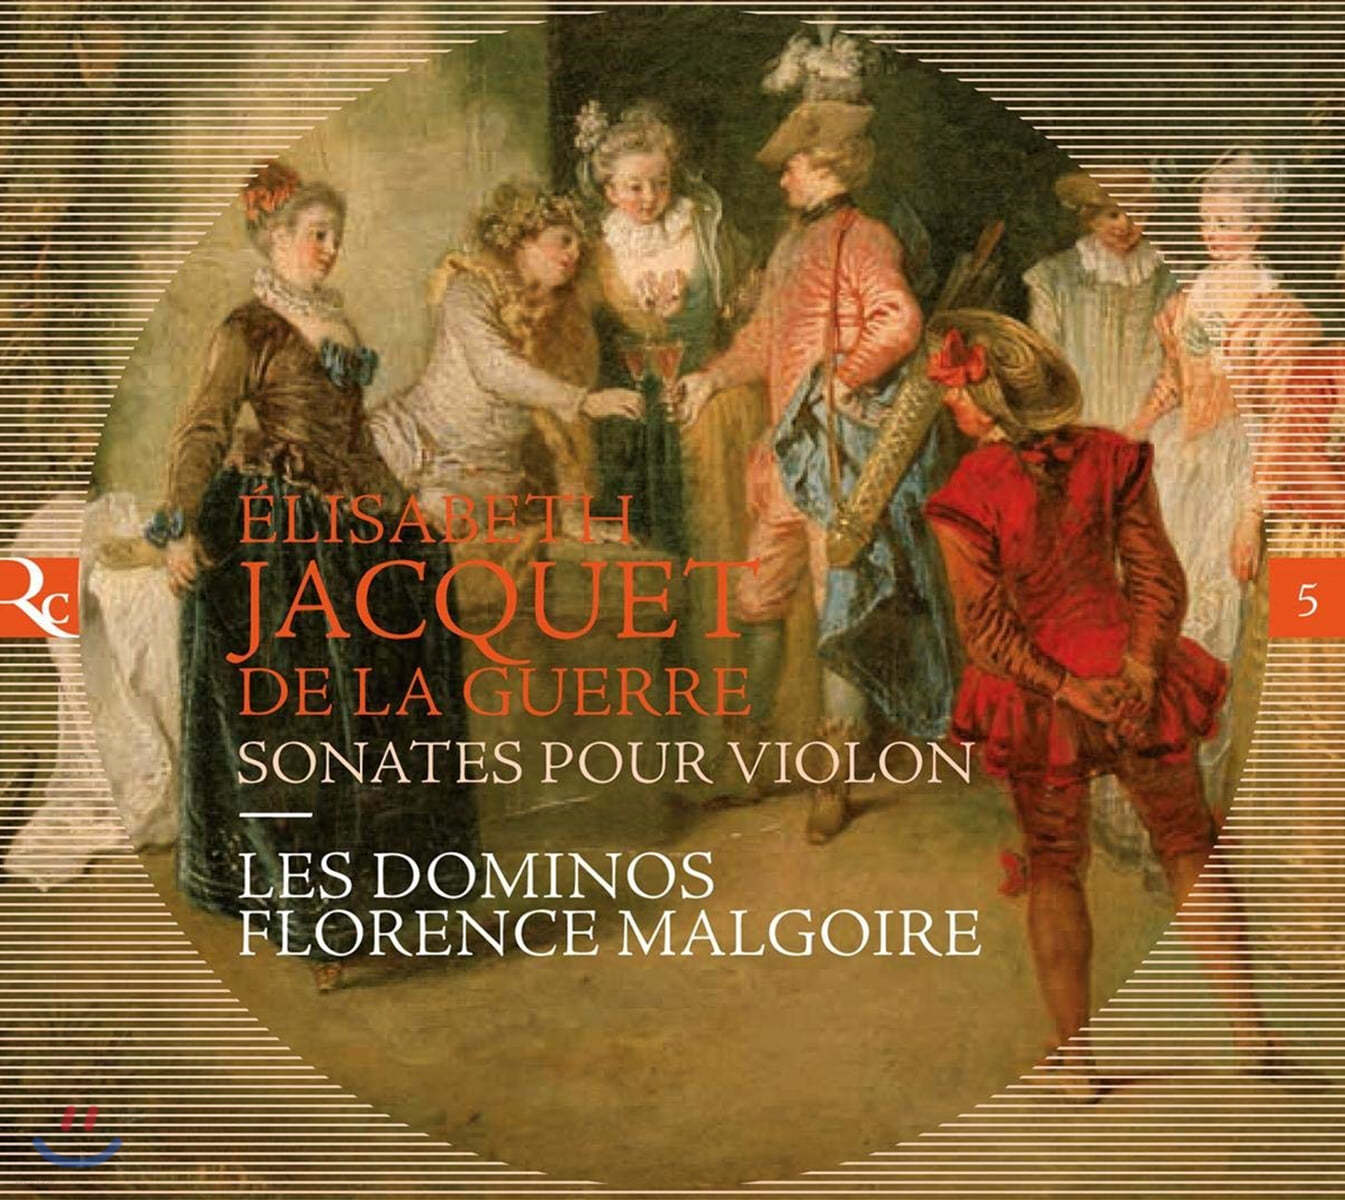 Florence Malgoire 엘리자베스 자케 드 라 게르: 바이올린 소나타 (Elisabeth Jacquet de la Guerre: Sonates Pour Violon)